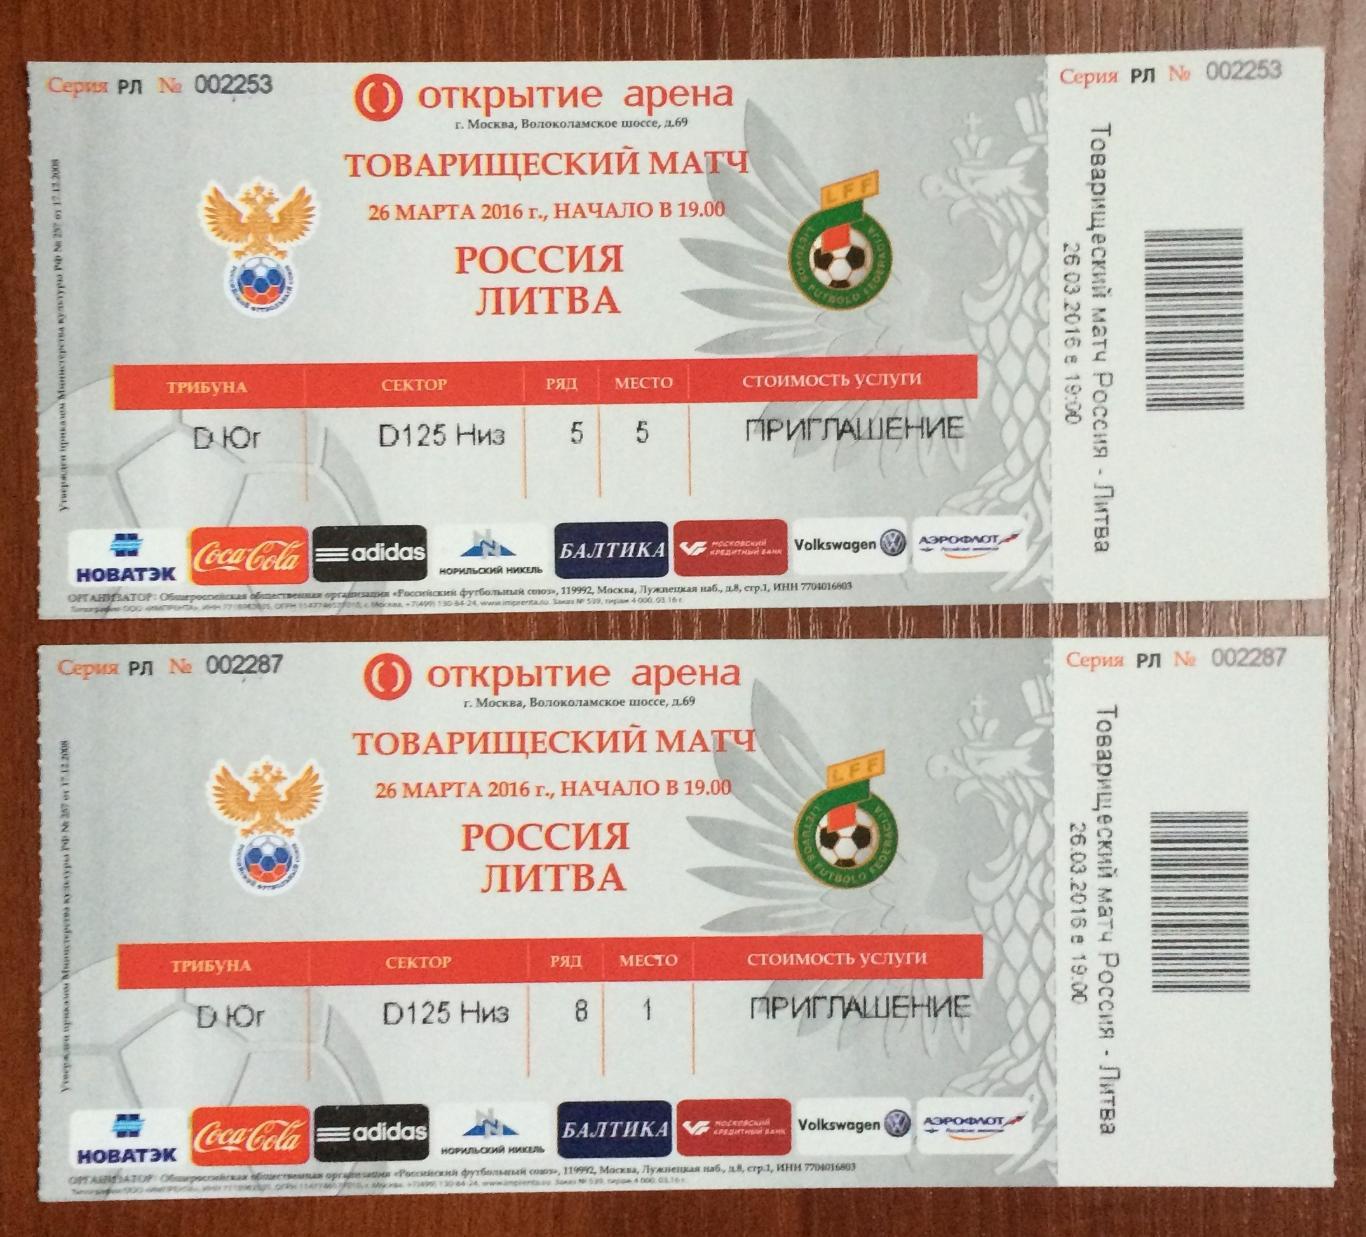 Билет футбол Россия - Литва 26.03.2016 год трибуна D Юг